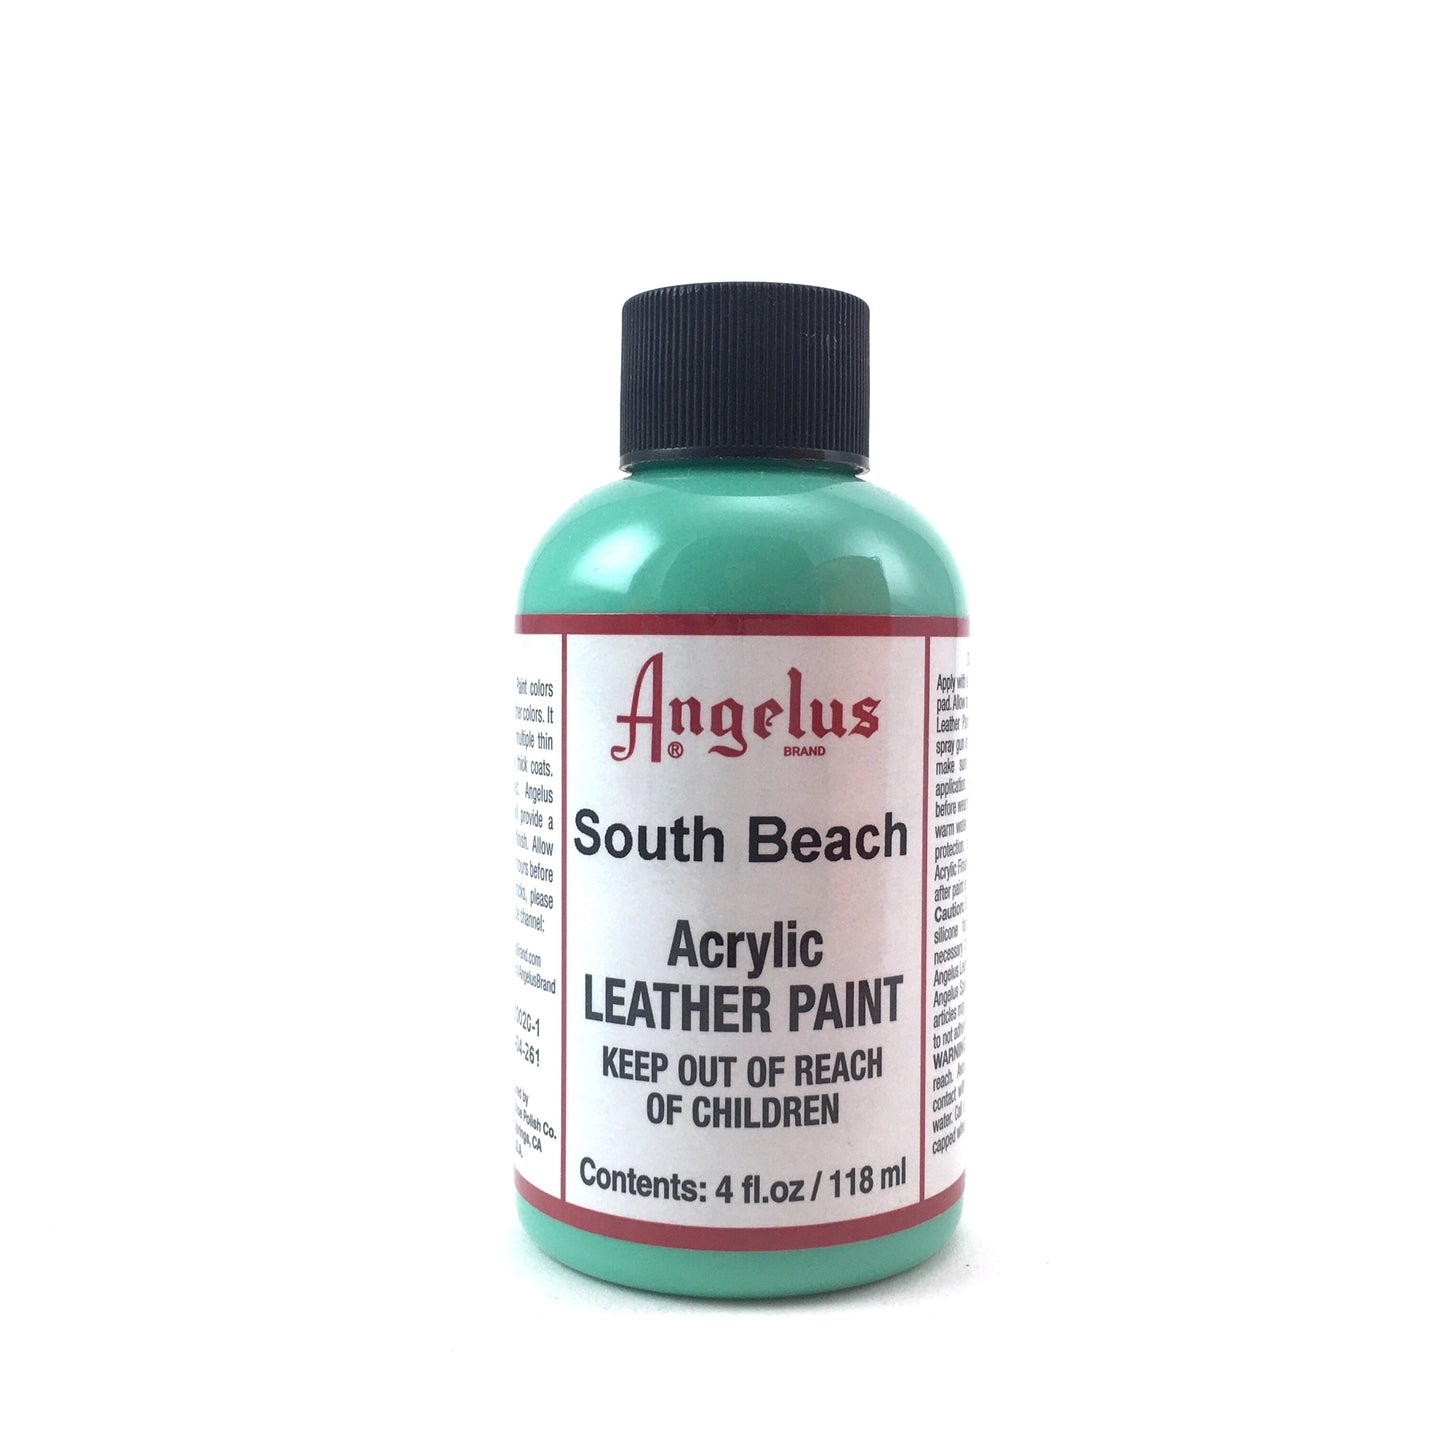 Angelus Brand Acrylic Leather Paint Waterproof 4oz - Helia Beer Co